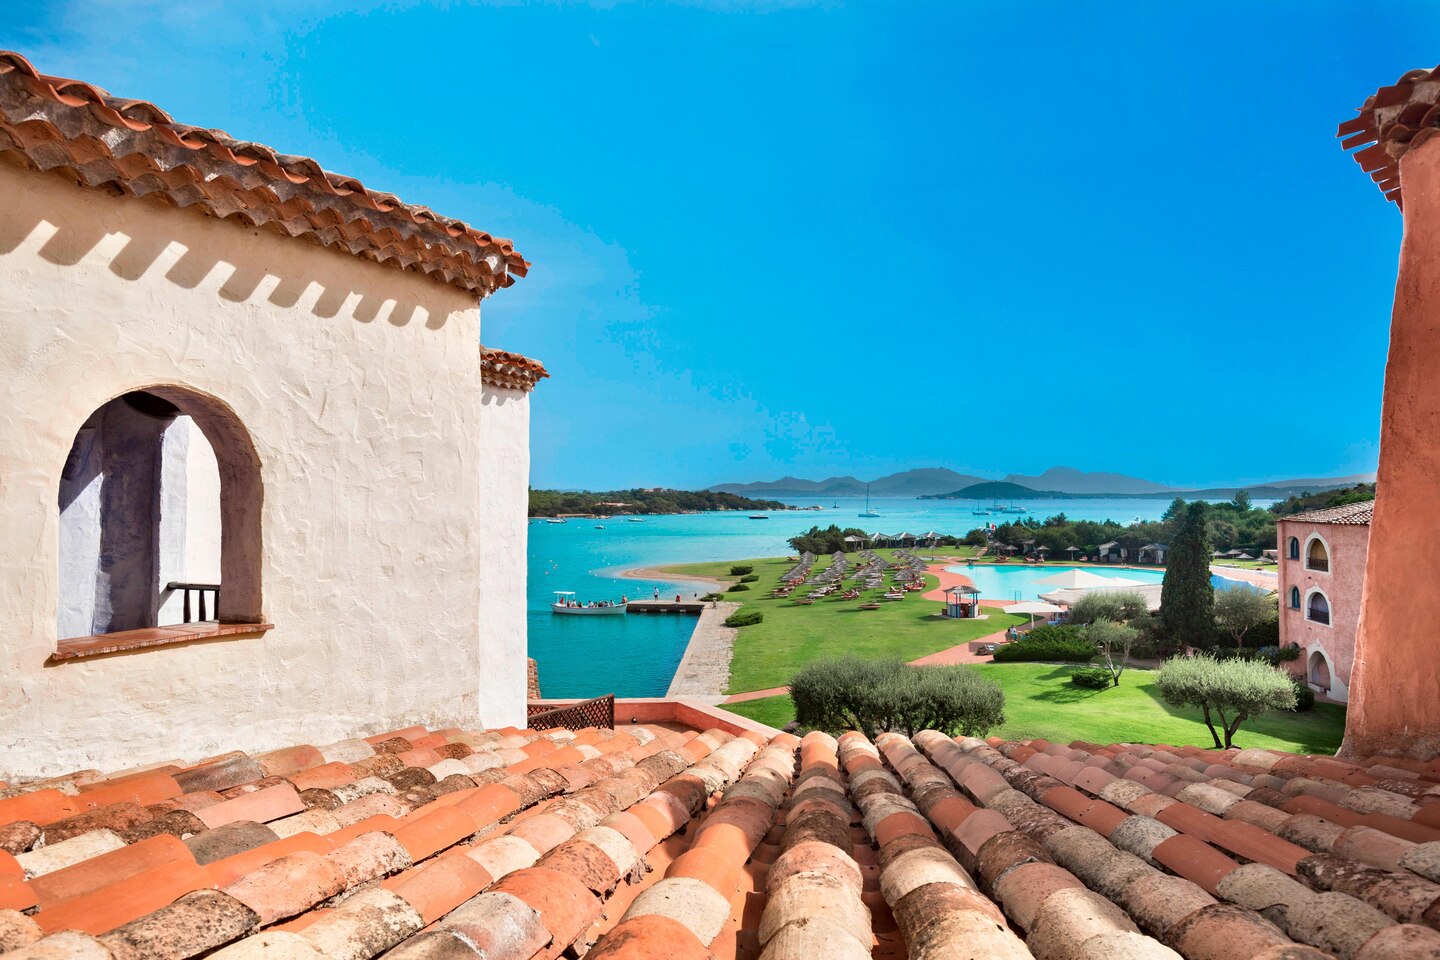 Sardinia HOTEL|サルデーニャ島 ホテル